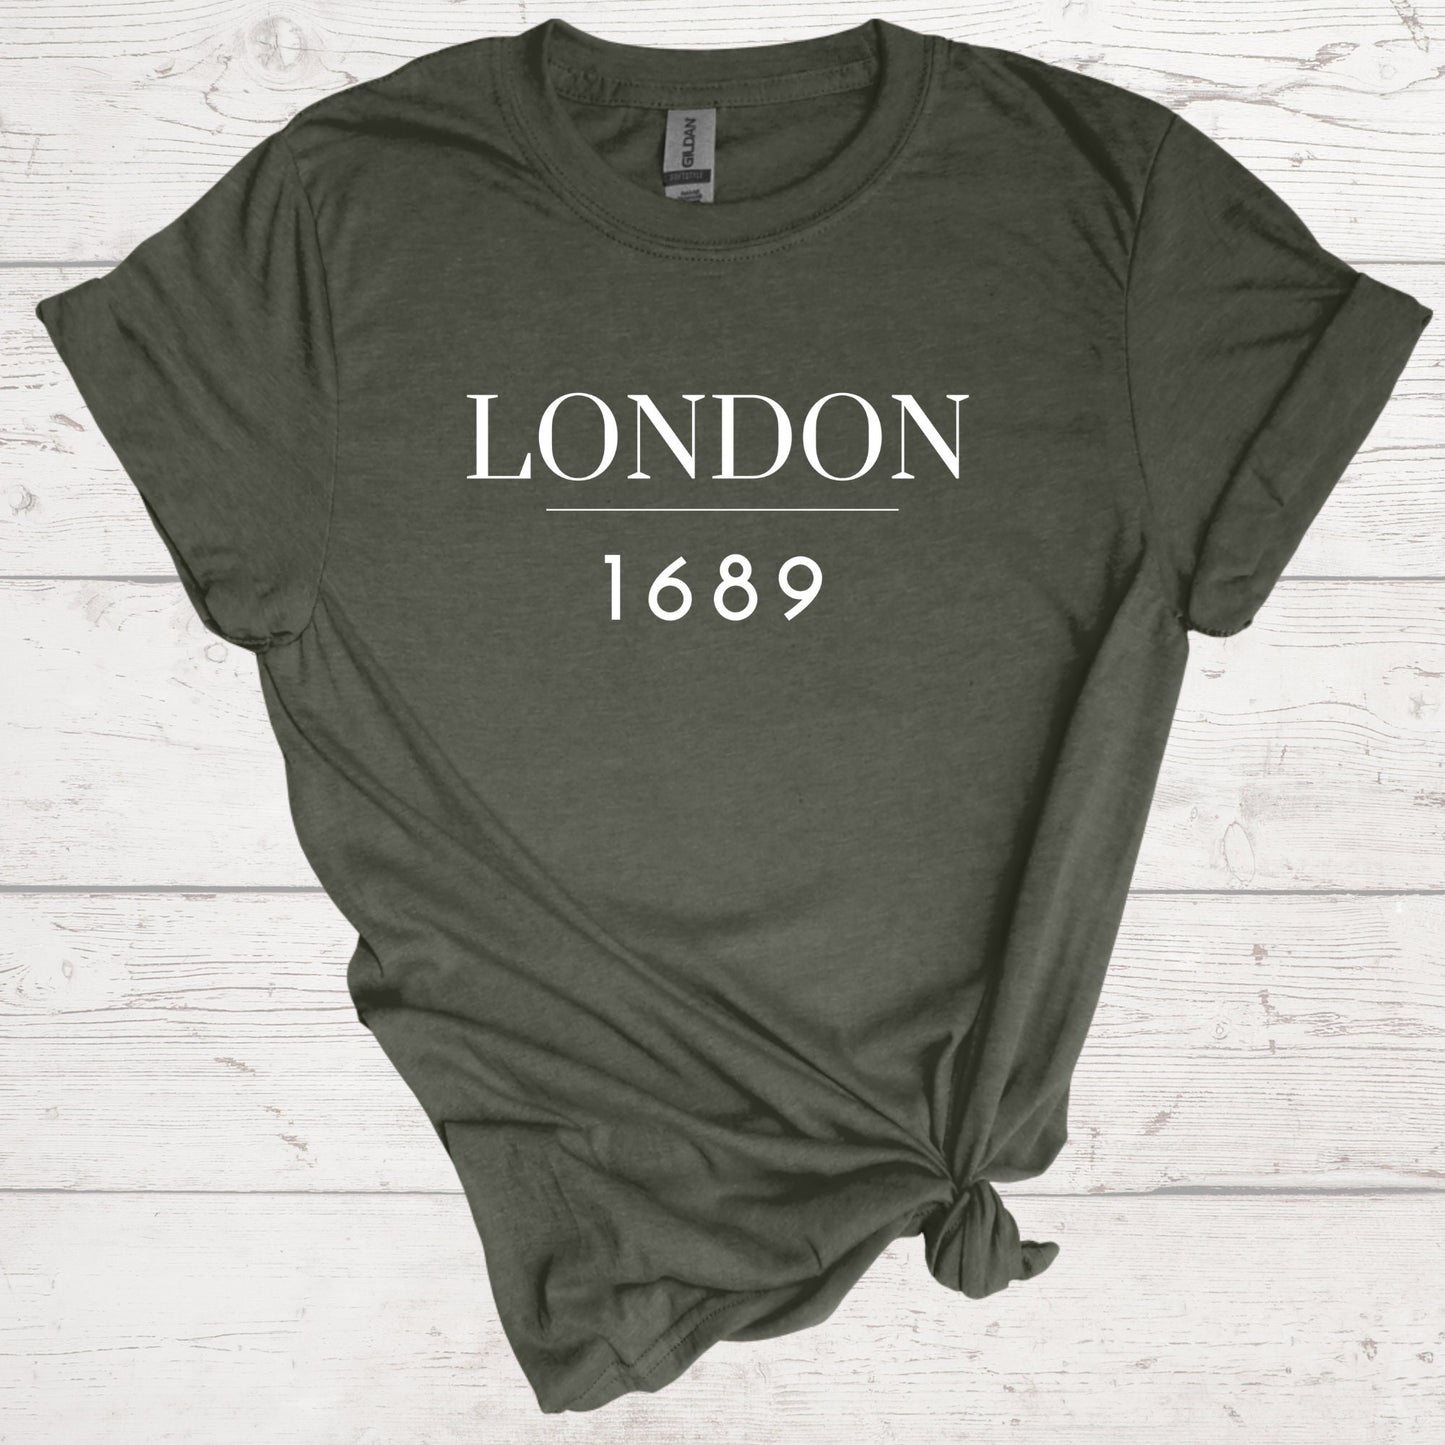 London 1689 Shirt